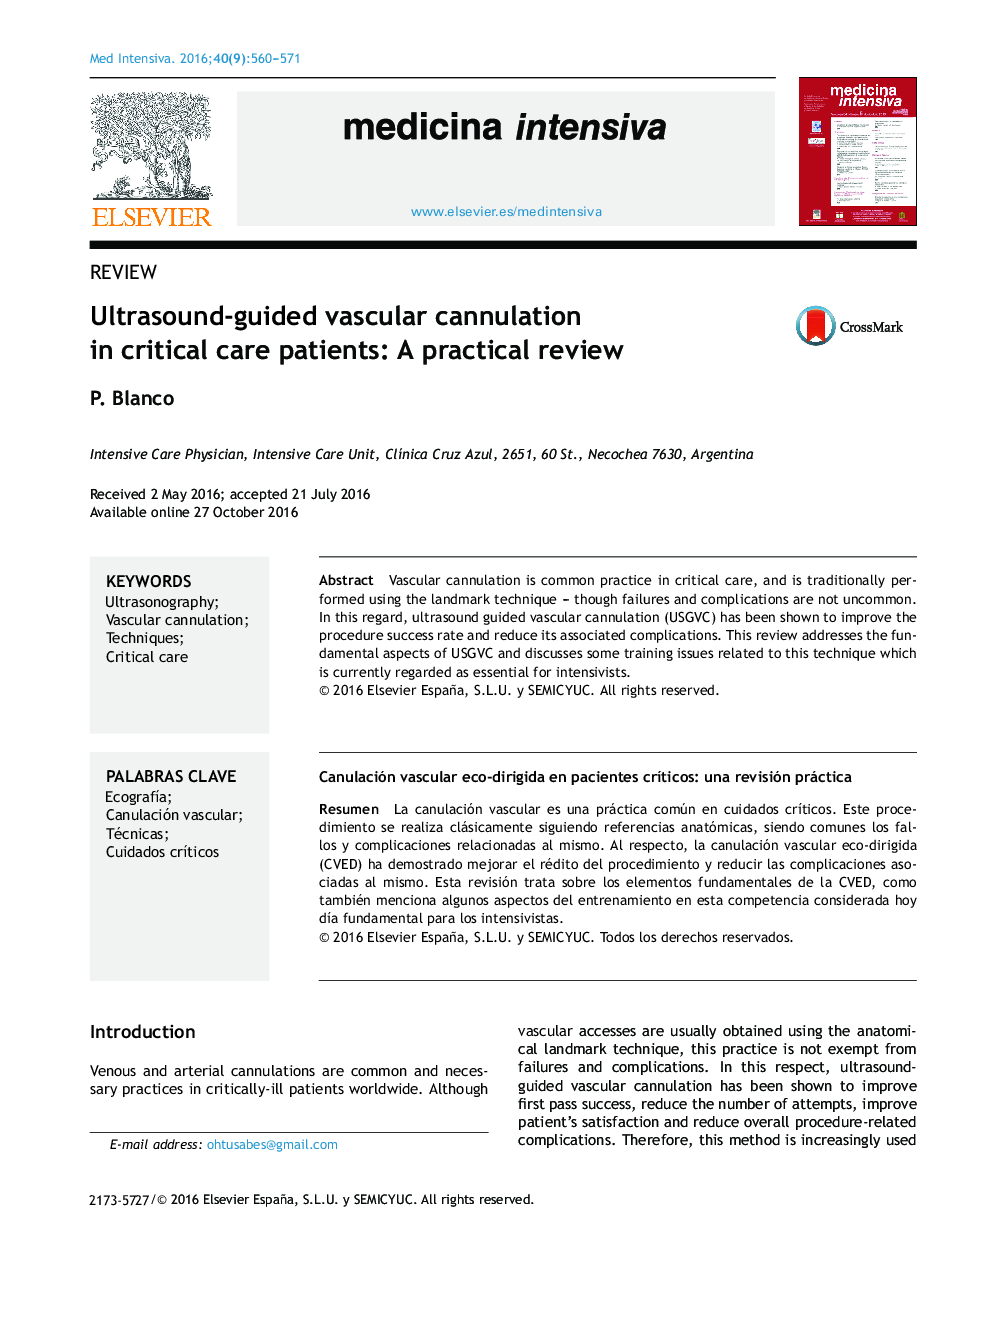 سونوگرافی هدایت شده کانولاسیون عروق در بیماران مراقبت های ویژه: یک بررسی عملی 